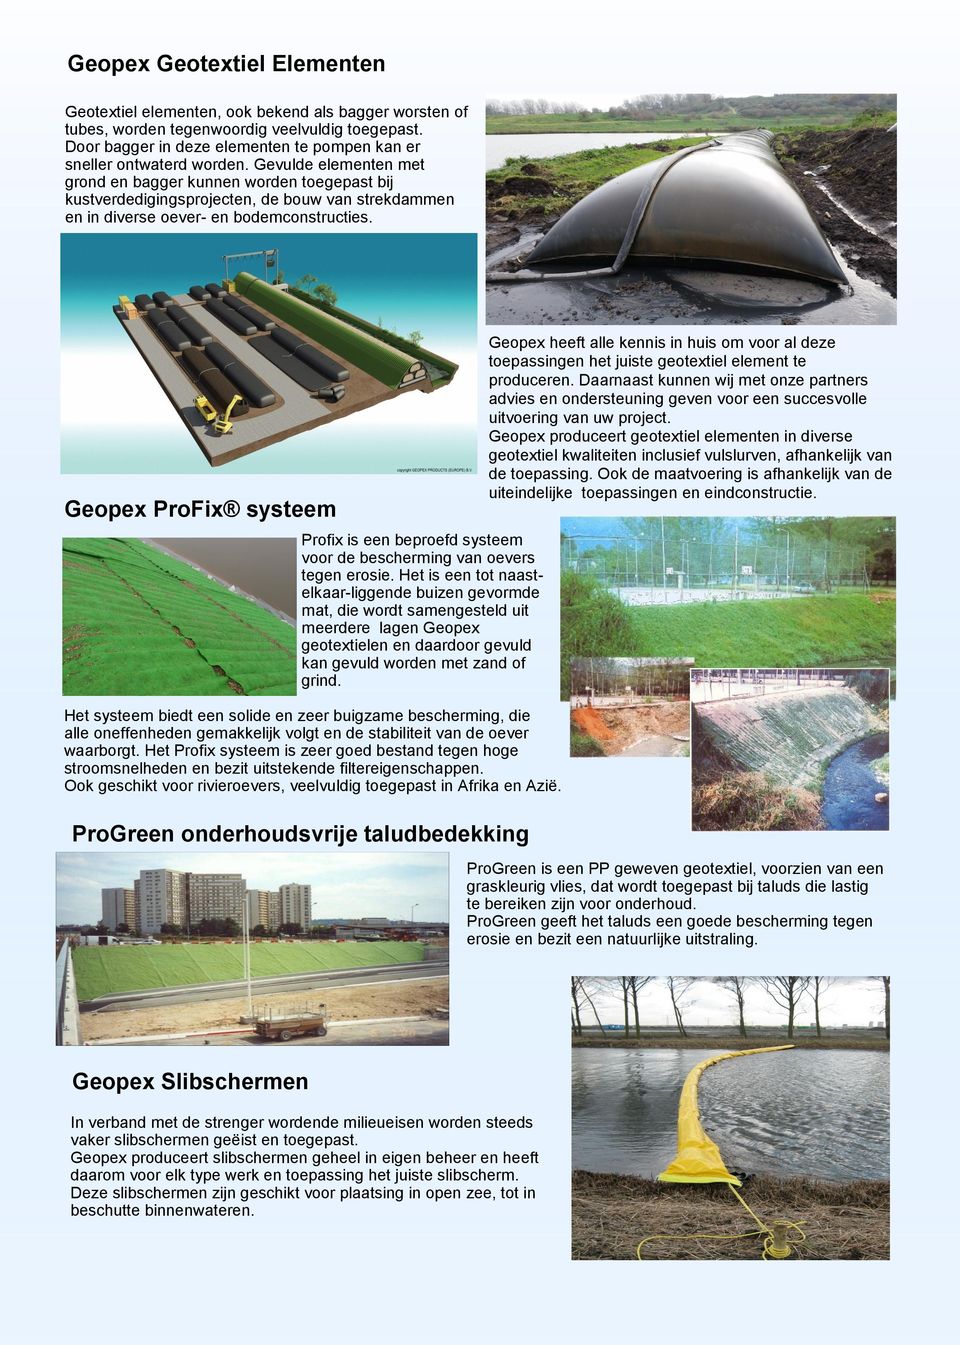 Gevulde elementen met grond en bagger kunnen worden toegepast bij kustverdedigingsprojecten, de bouw van strekdammen en in diverse oever- en bodemconstructies.